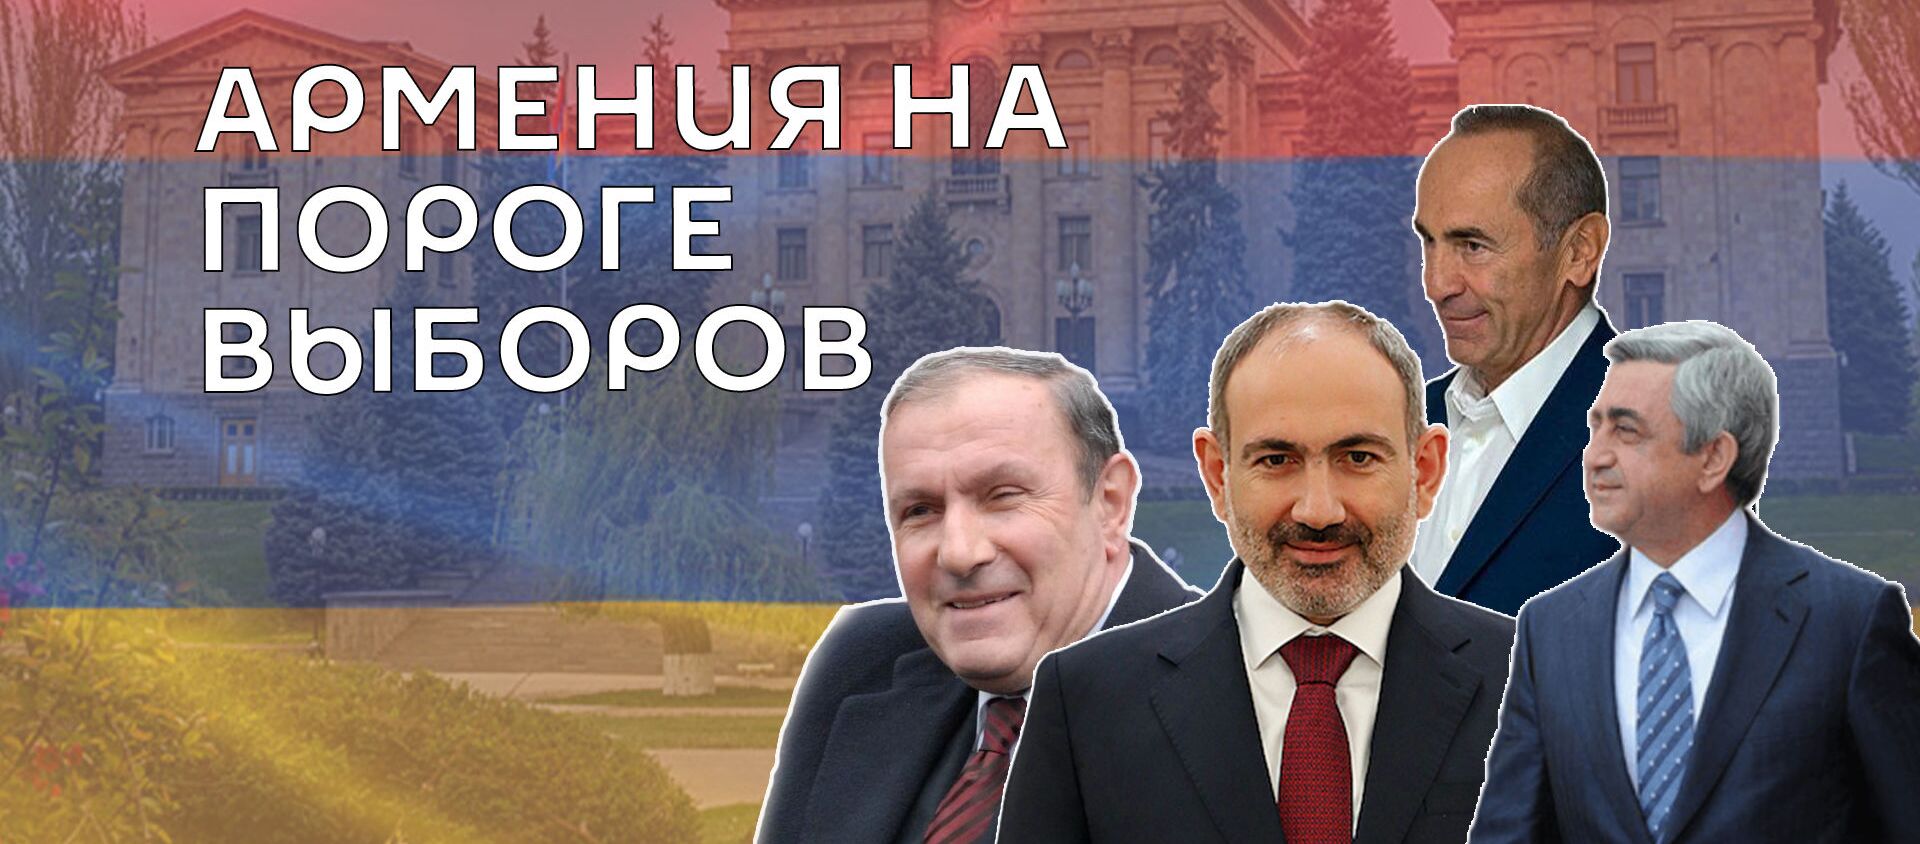 Выборы в Армении 2021: как проходила предвыборная кампания - Sputnik Армения, 1920